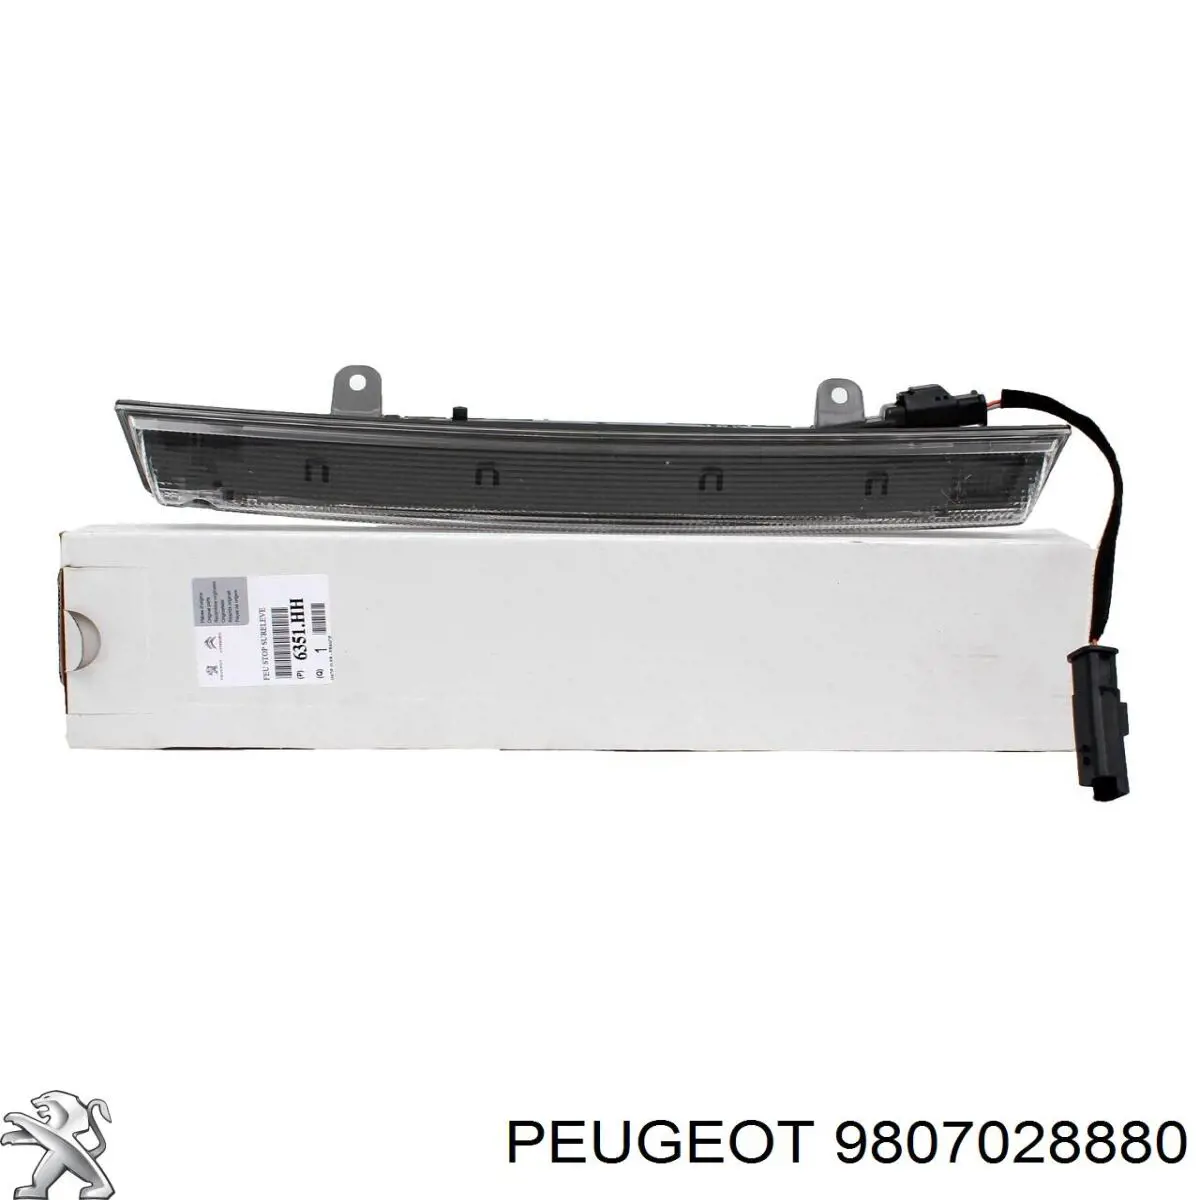 Caja de fusibles 9807028880 Peugeot/Citroen